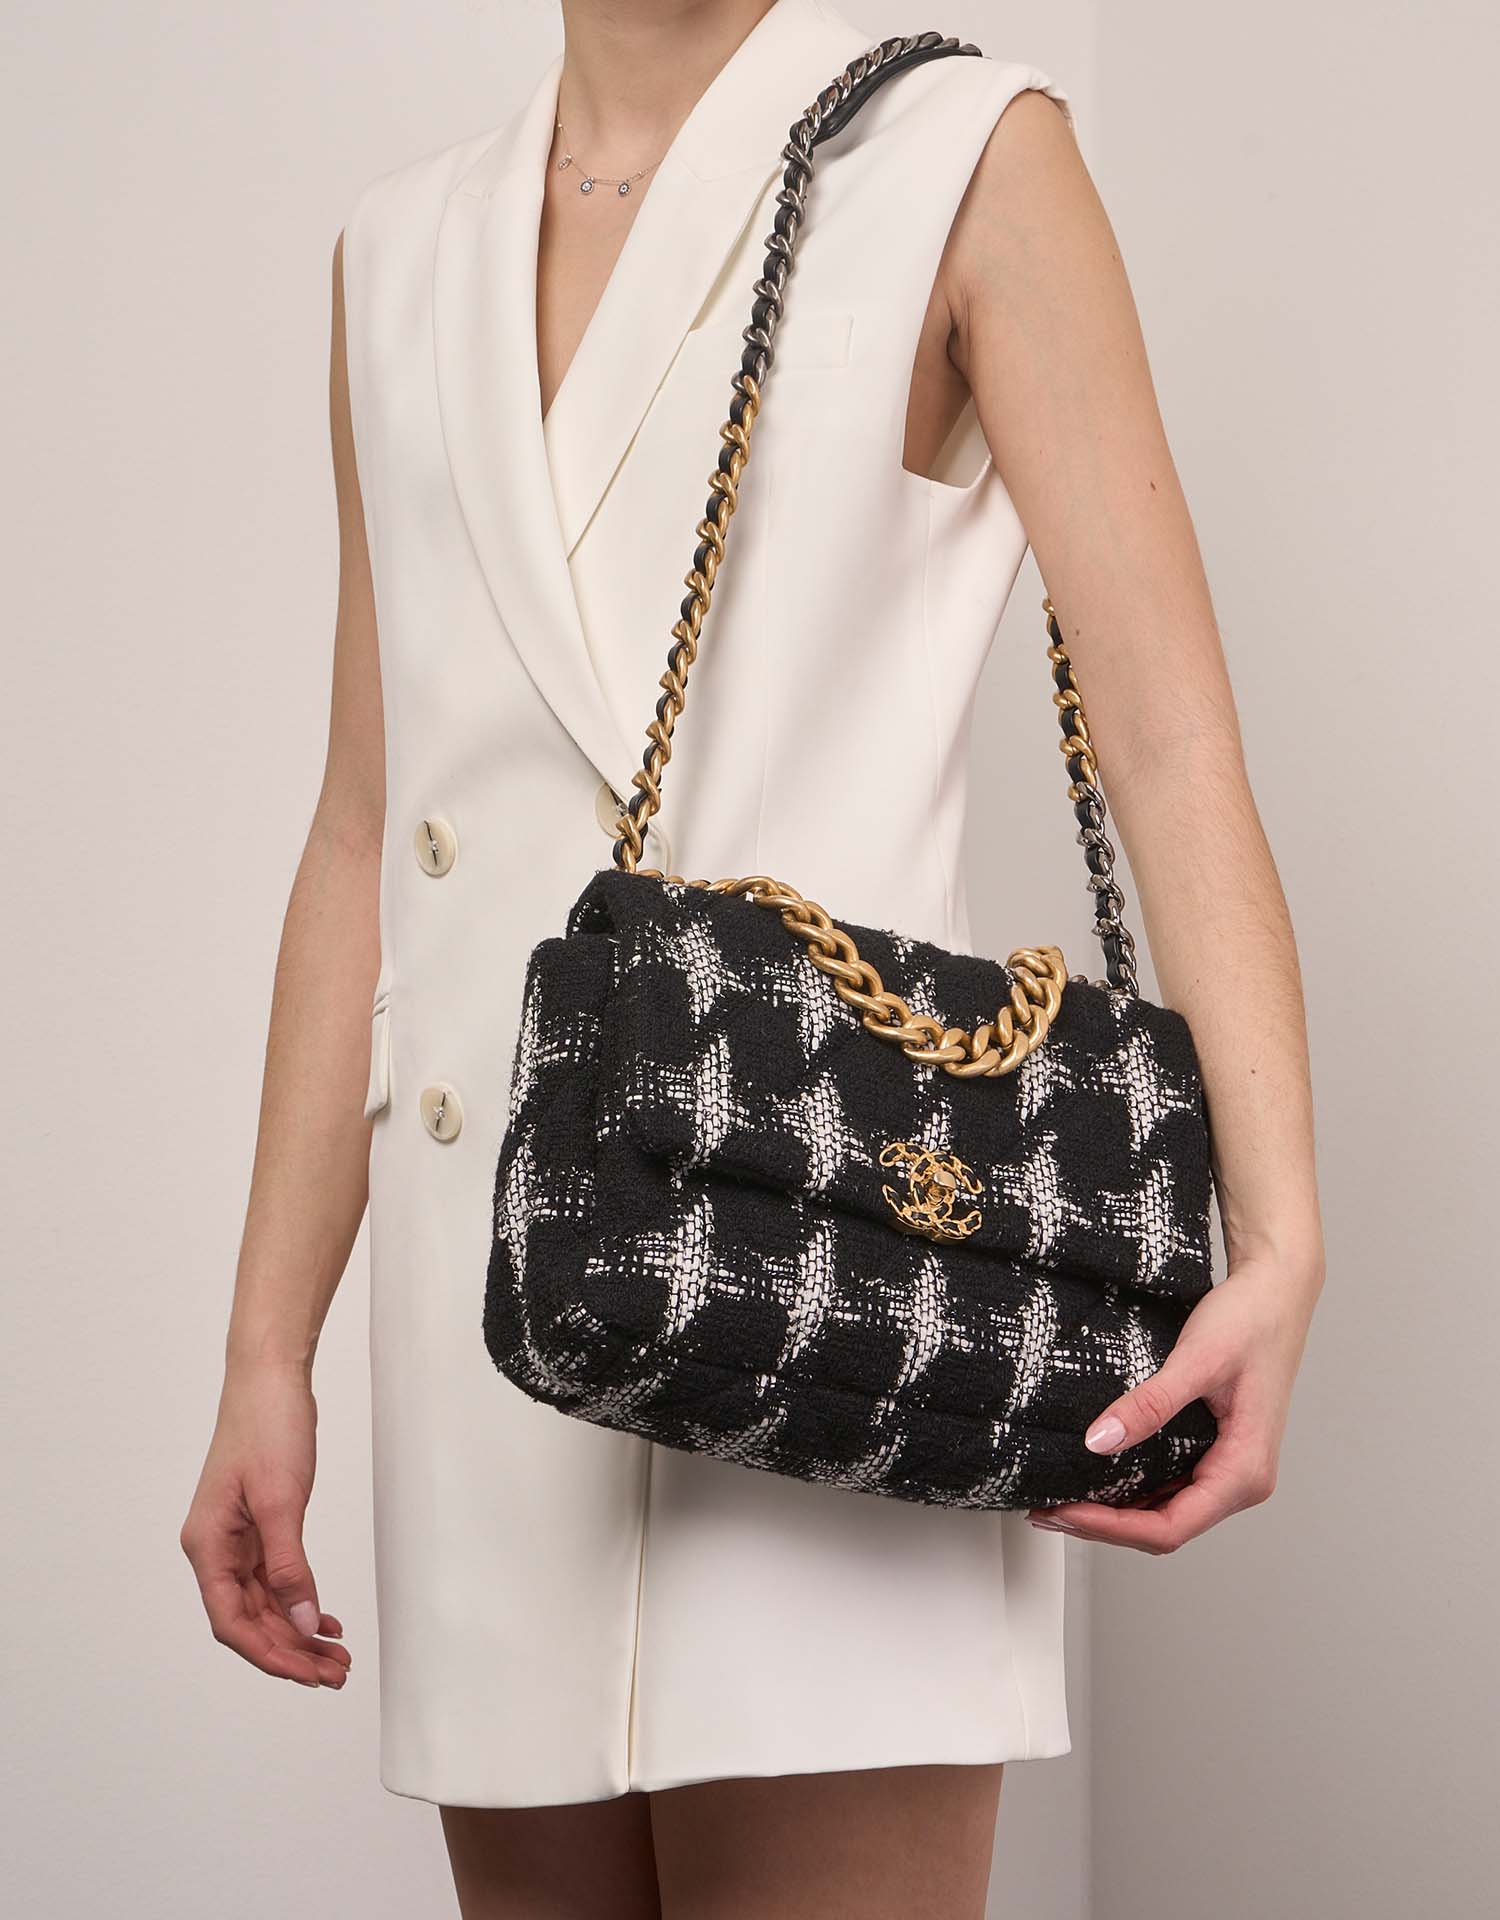 Chanel 19 LargeFlapBag Black-White 1M | Sell your designer bag on Saclab.com